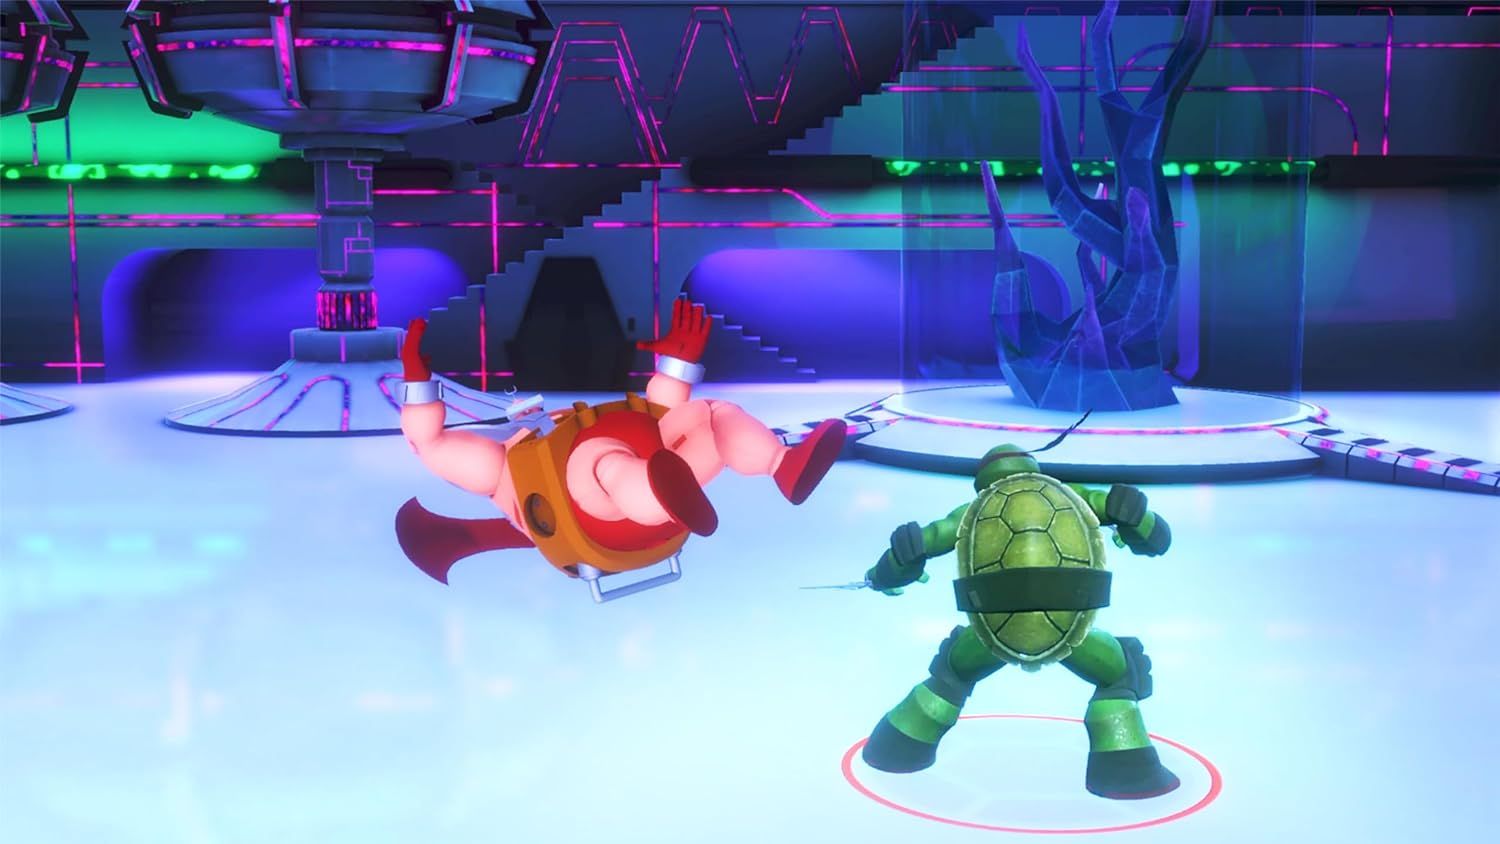 Gra Teenage Mutant Ninja Turtles: Wrath of the Mutants (PS4)